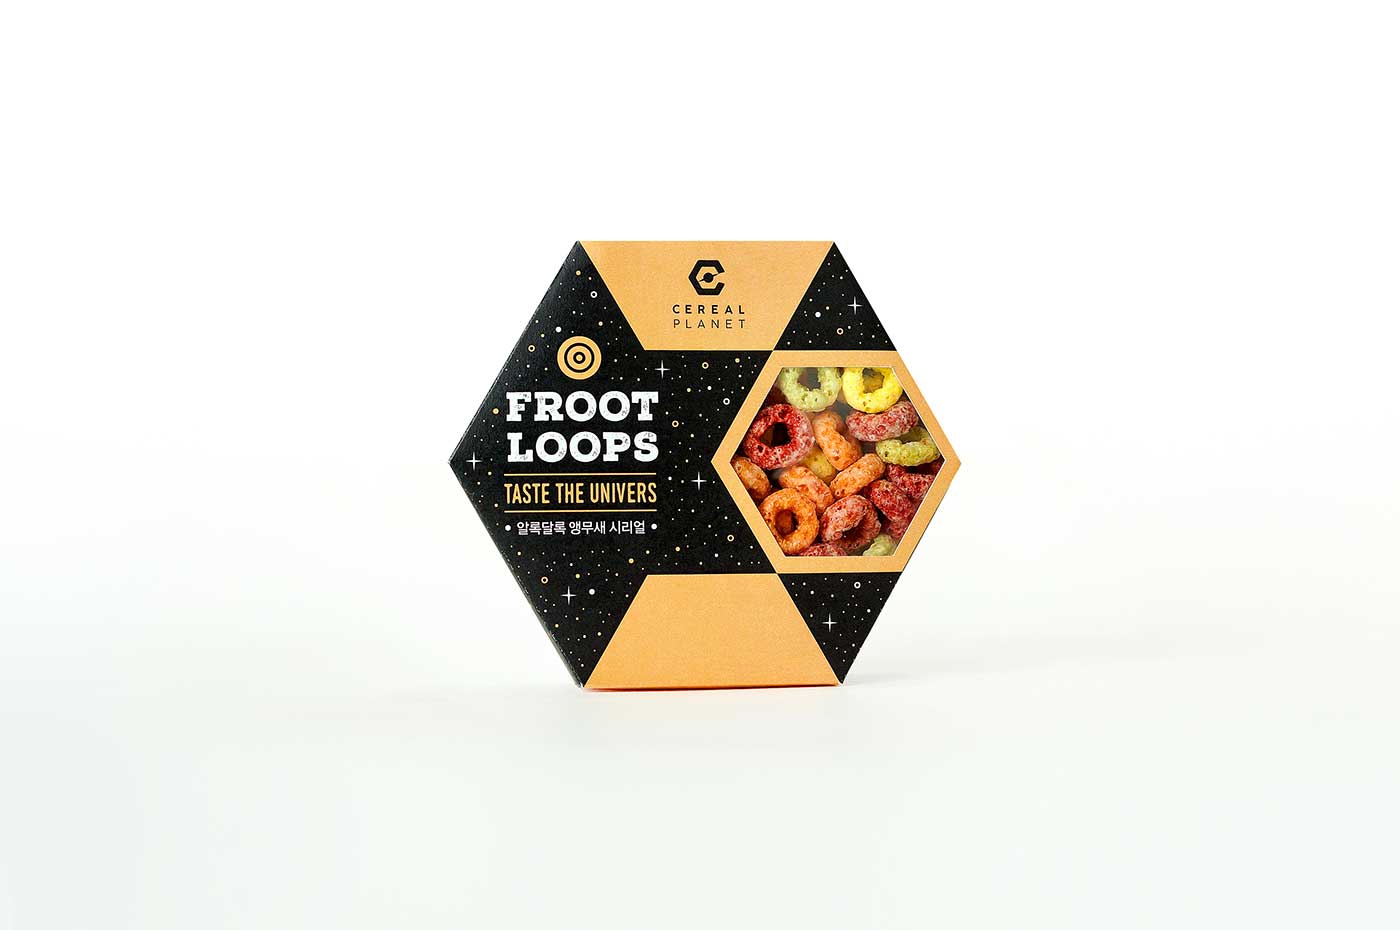  谷类食品创意包装设计